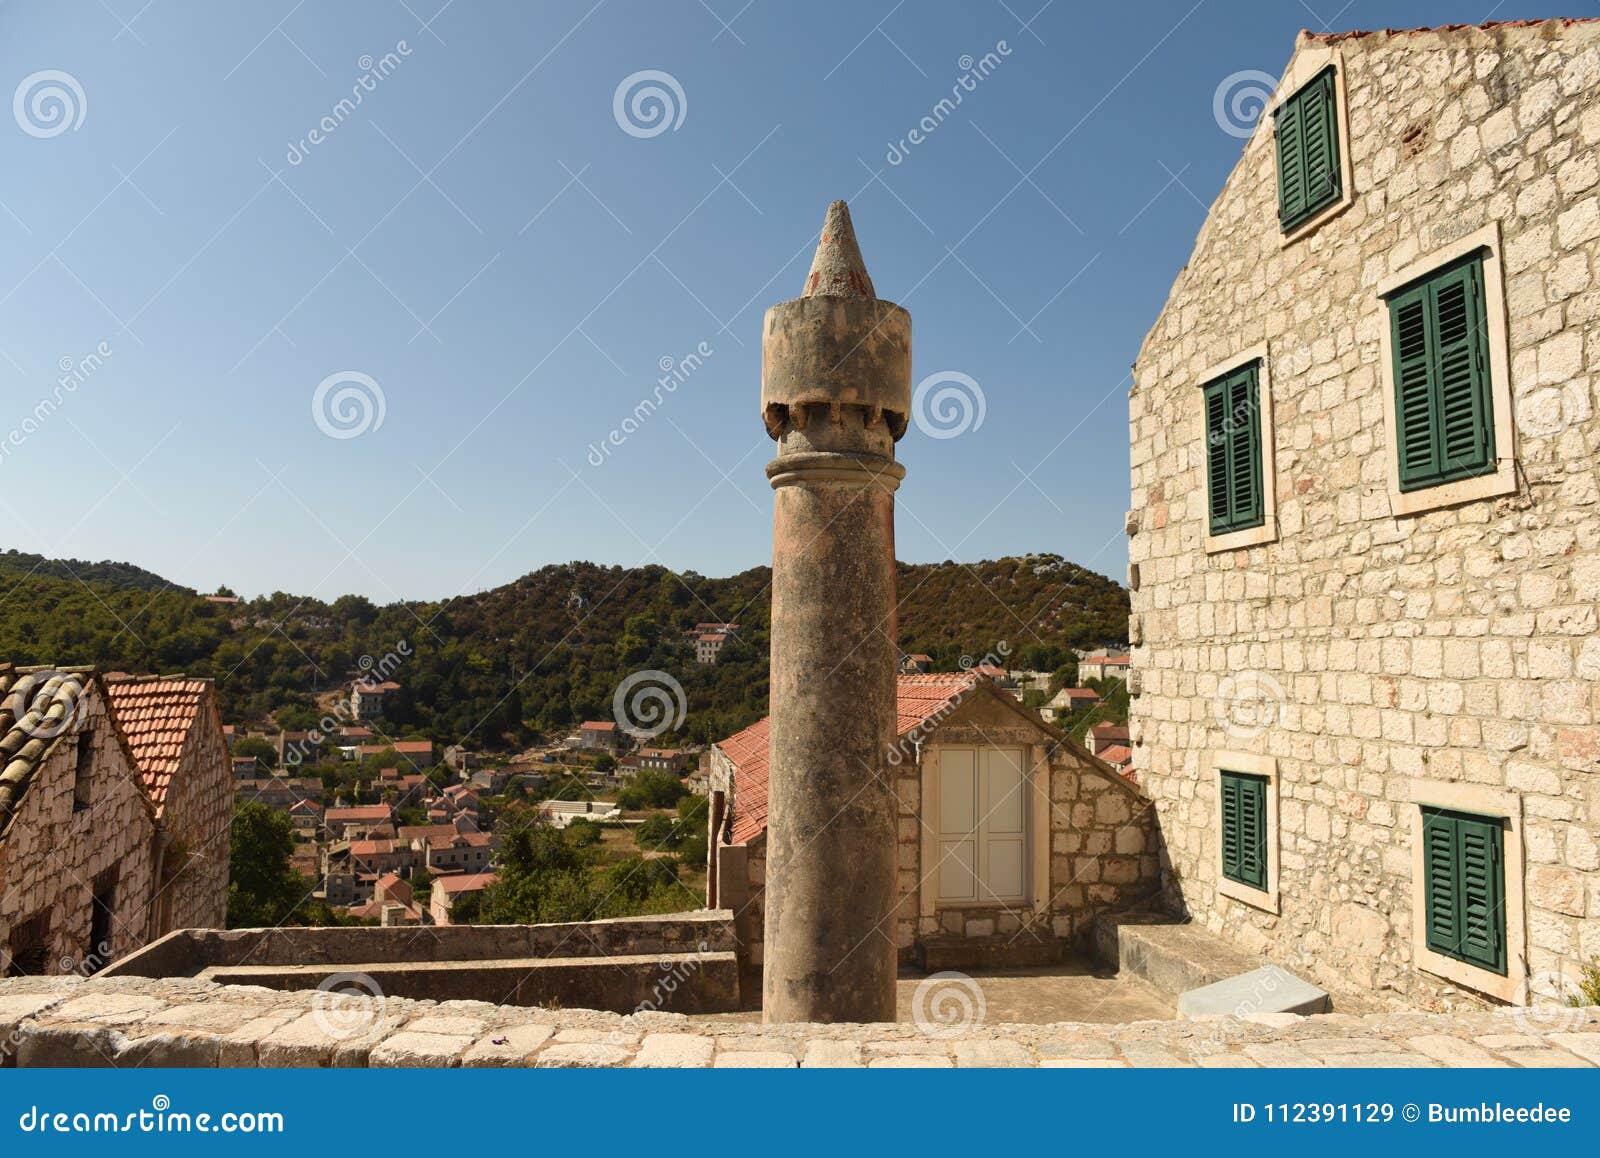 cylindrical chimneys fumar fumari on lastovo island, croatia